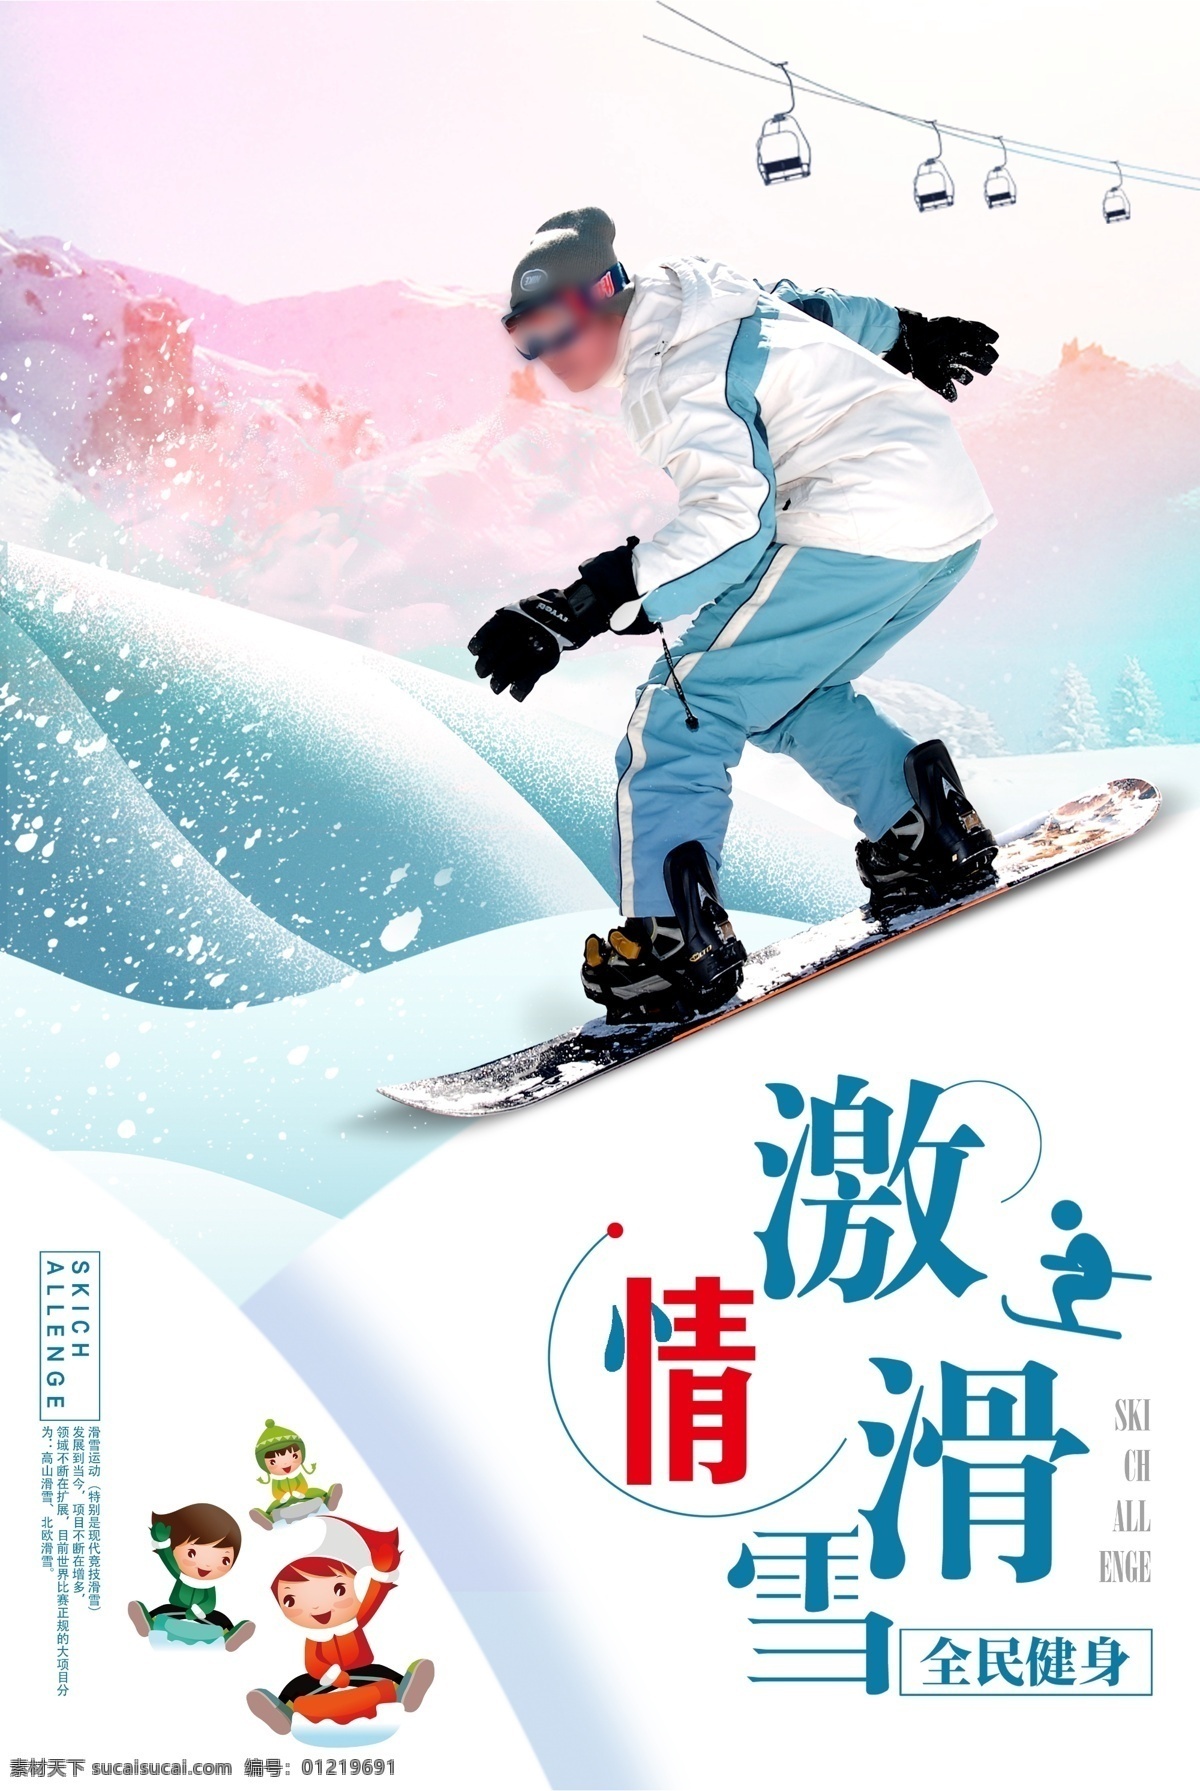 滑雪海报 滑雪 滑雪运动 滑雪宣传 滑雪展板 登山滑雪 滑雪挑战 激情滑雪 滑雪背景 滑雪素材 滑雪文化 滑雪体育 滑雪创新 滑雪篇 极限滑雪 滑雪广告 滑雪精神 滑雪形象 滑雪场 滑雪比赛 滑雪运动员 滑雪人物 滑雪冬奥会 滑雪北京